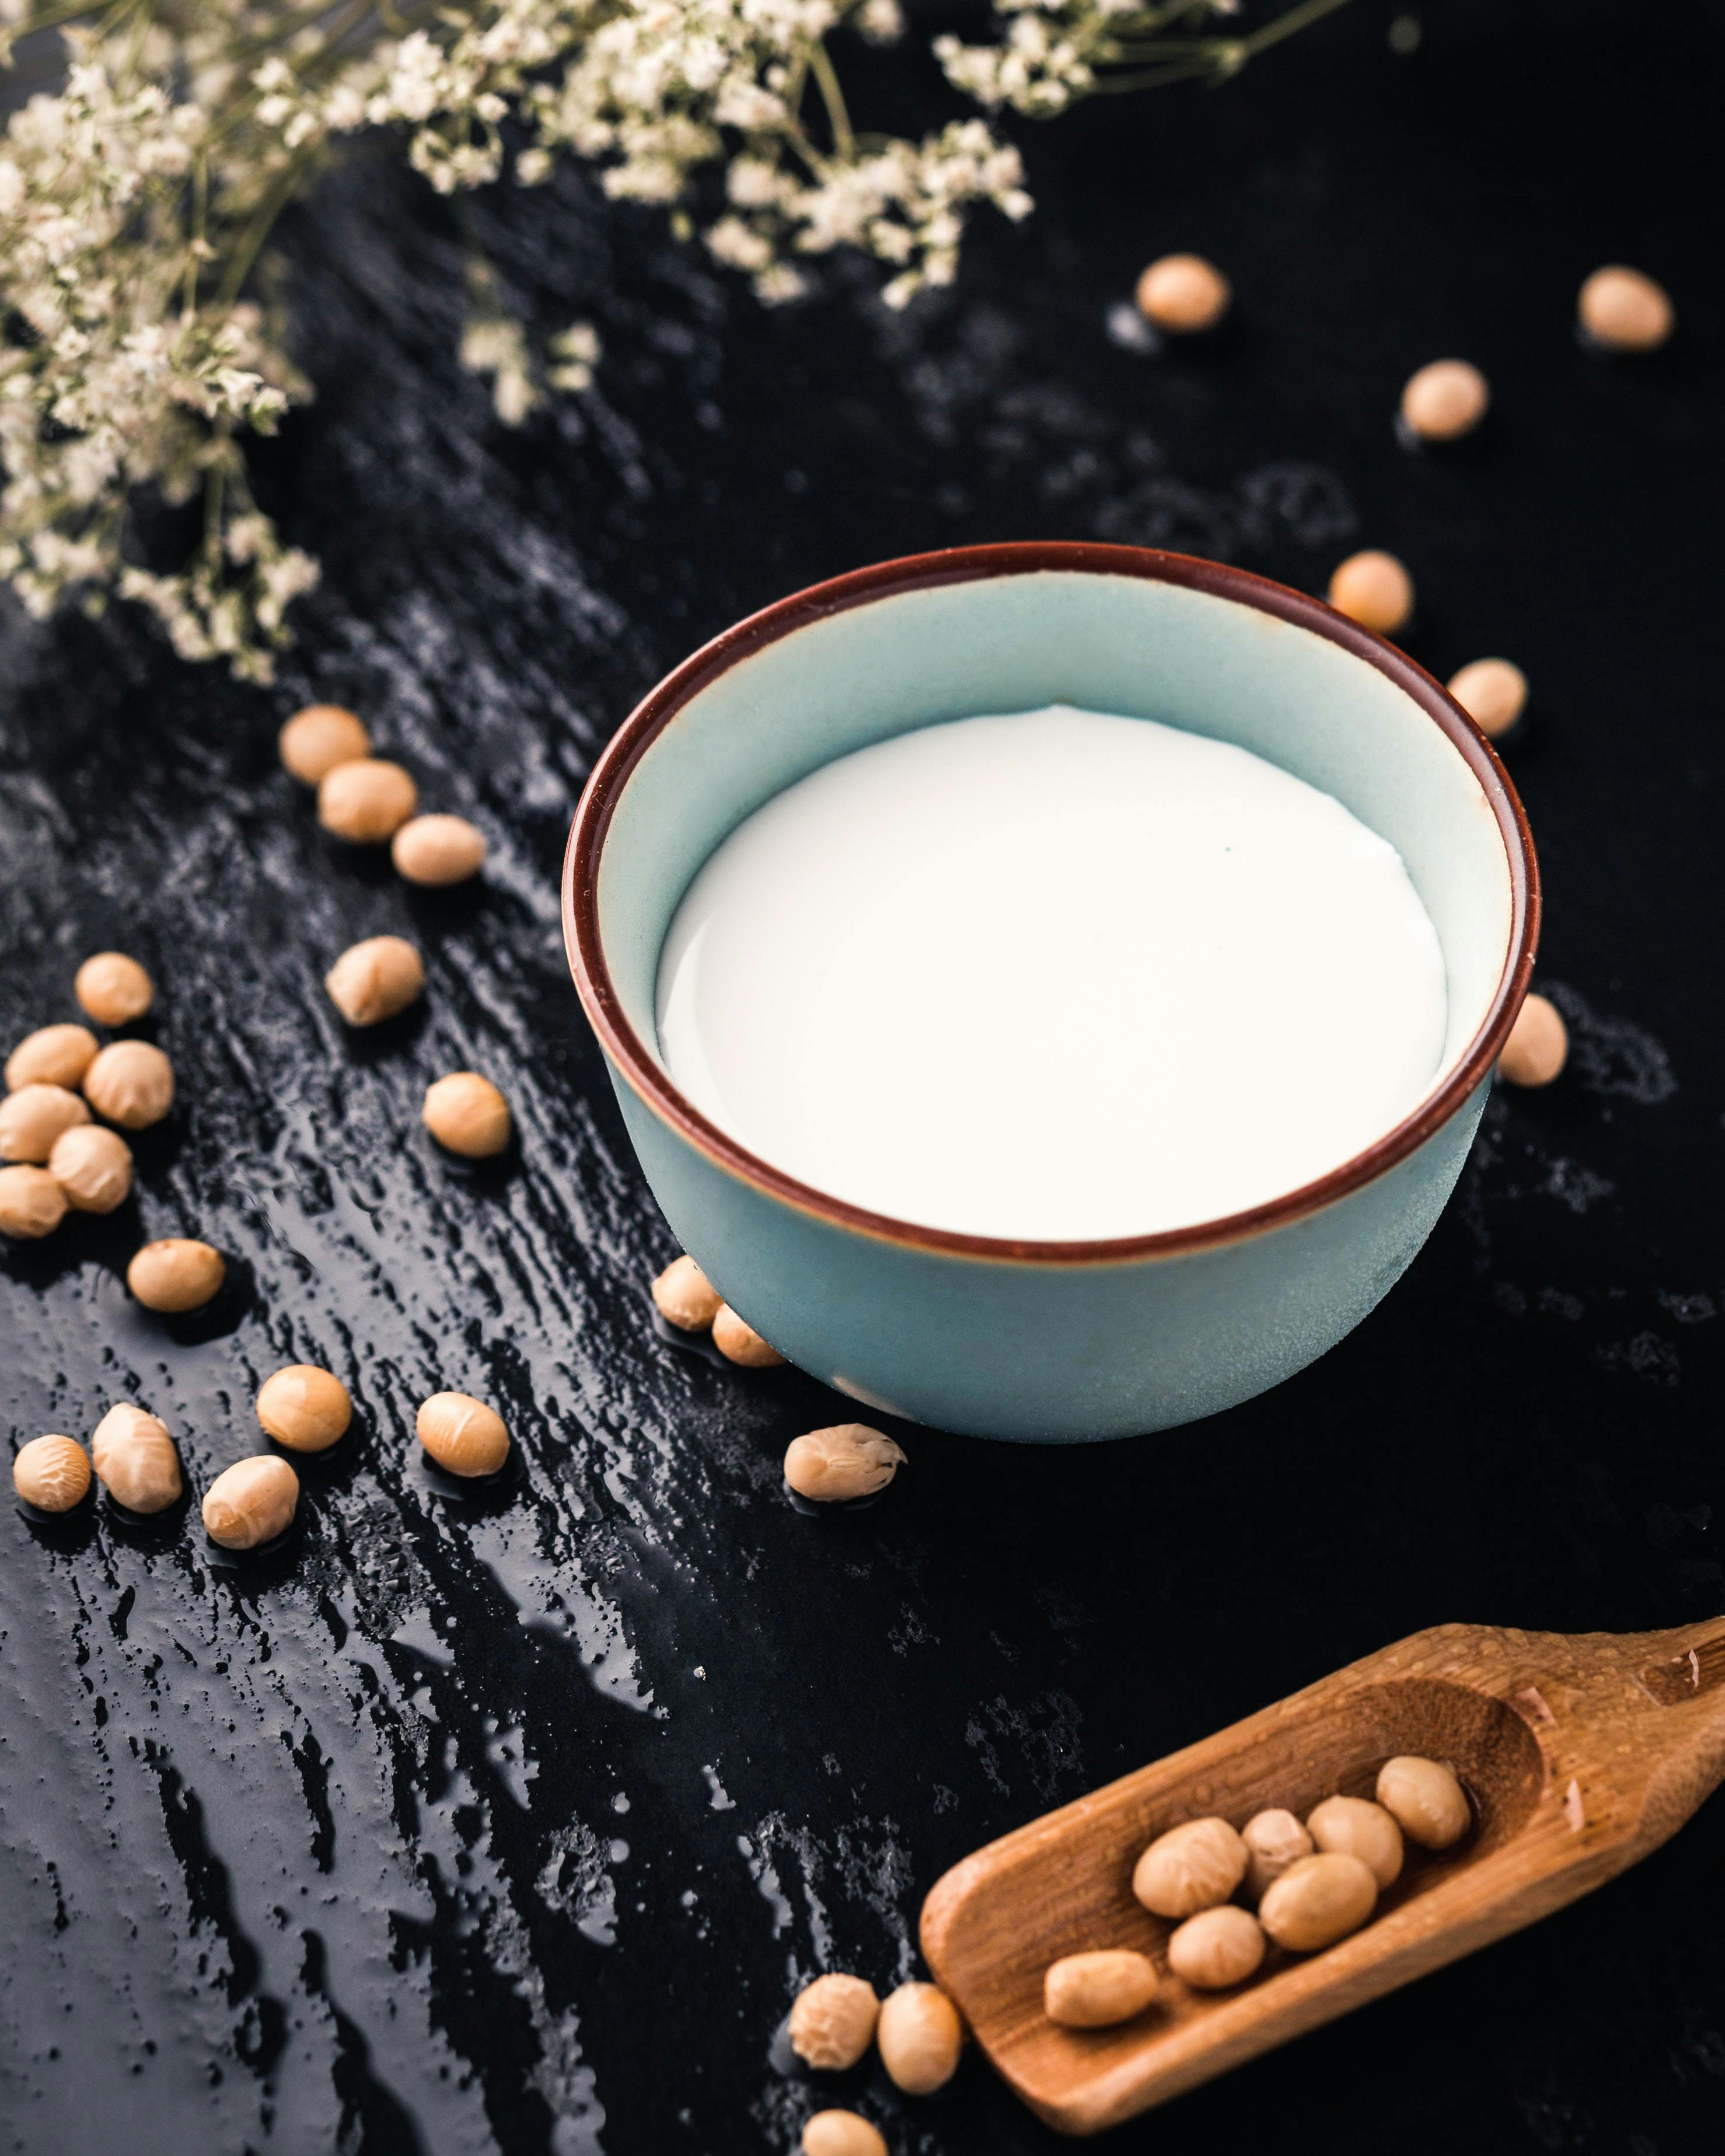 Les bienfaits et les utilisations du lait de soja